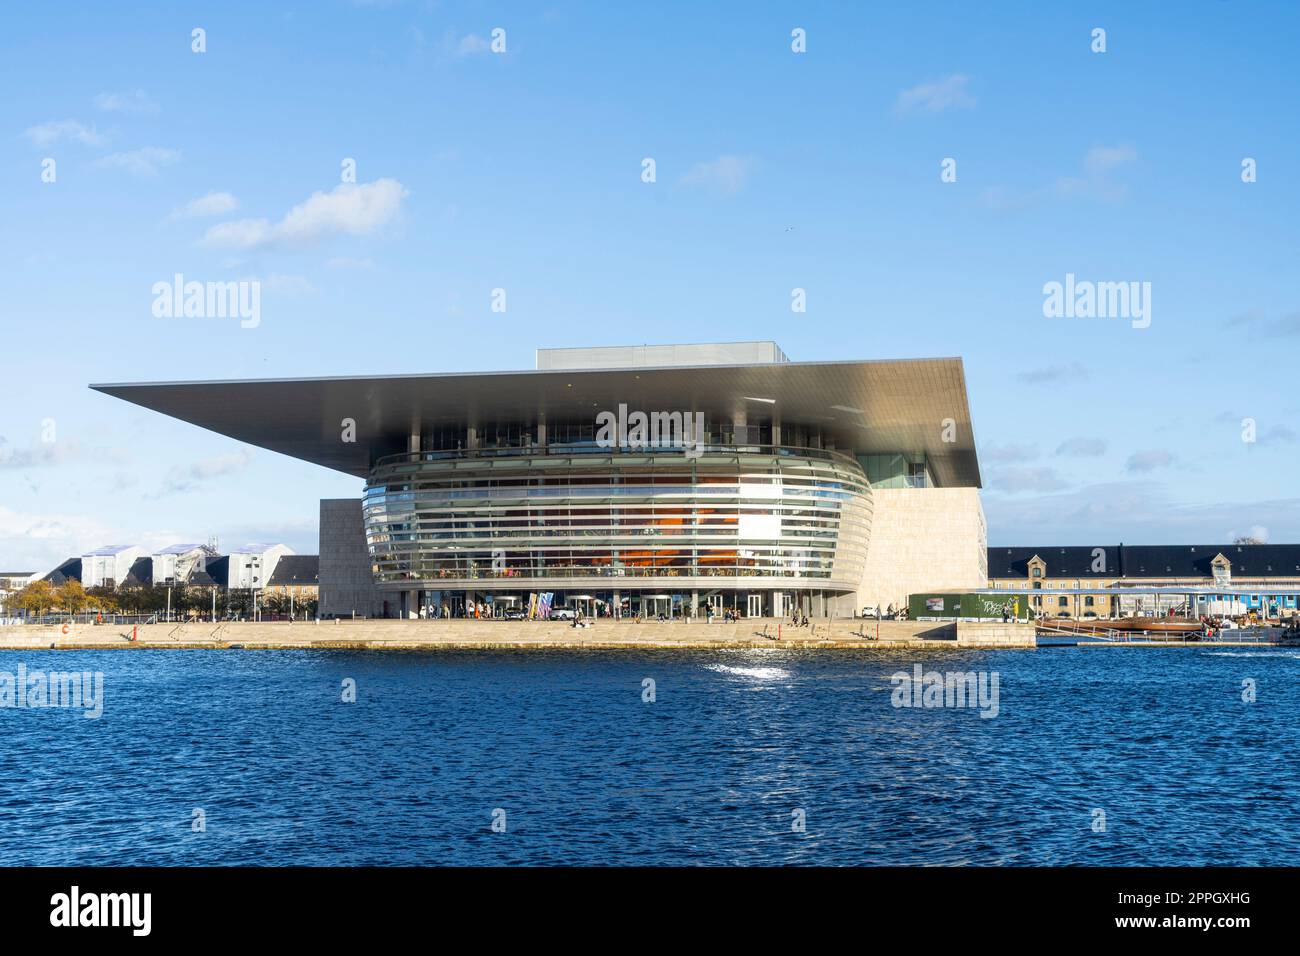 Bâtiment de l'Opéra de Copenhague au Danemark Banque D'Images